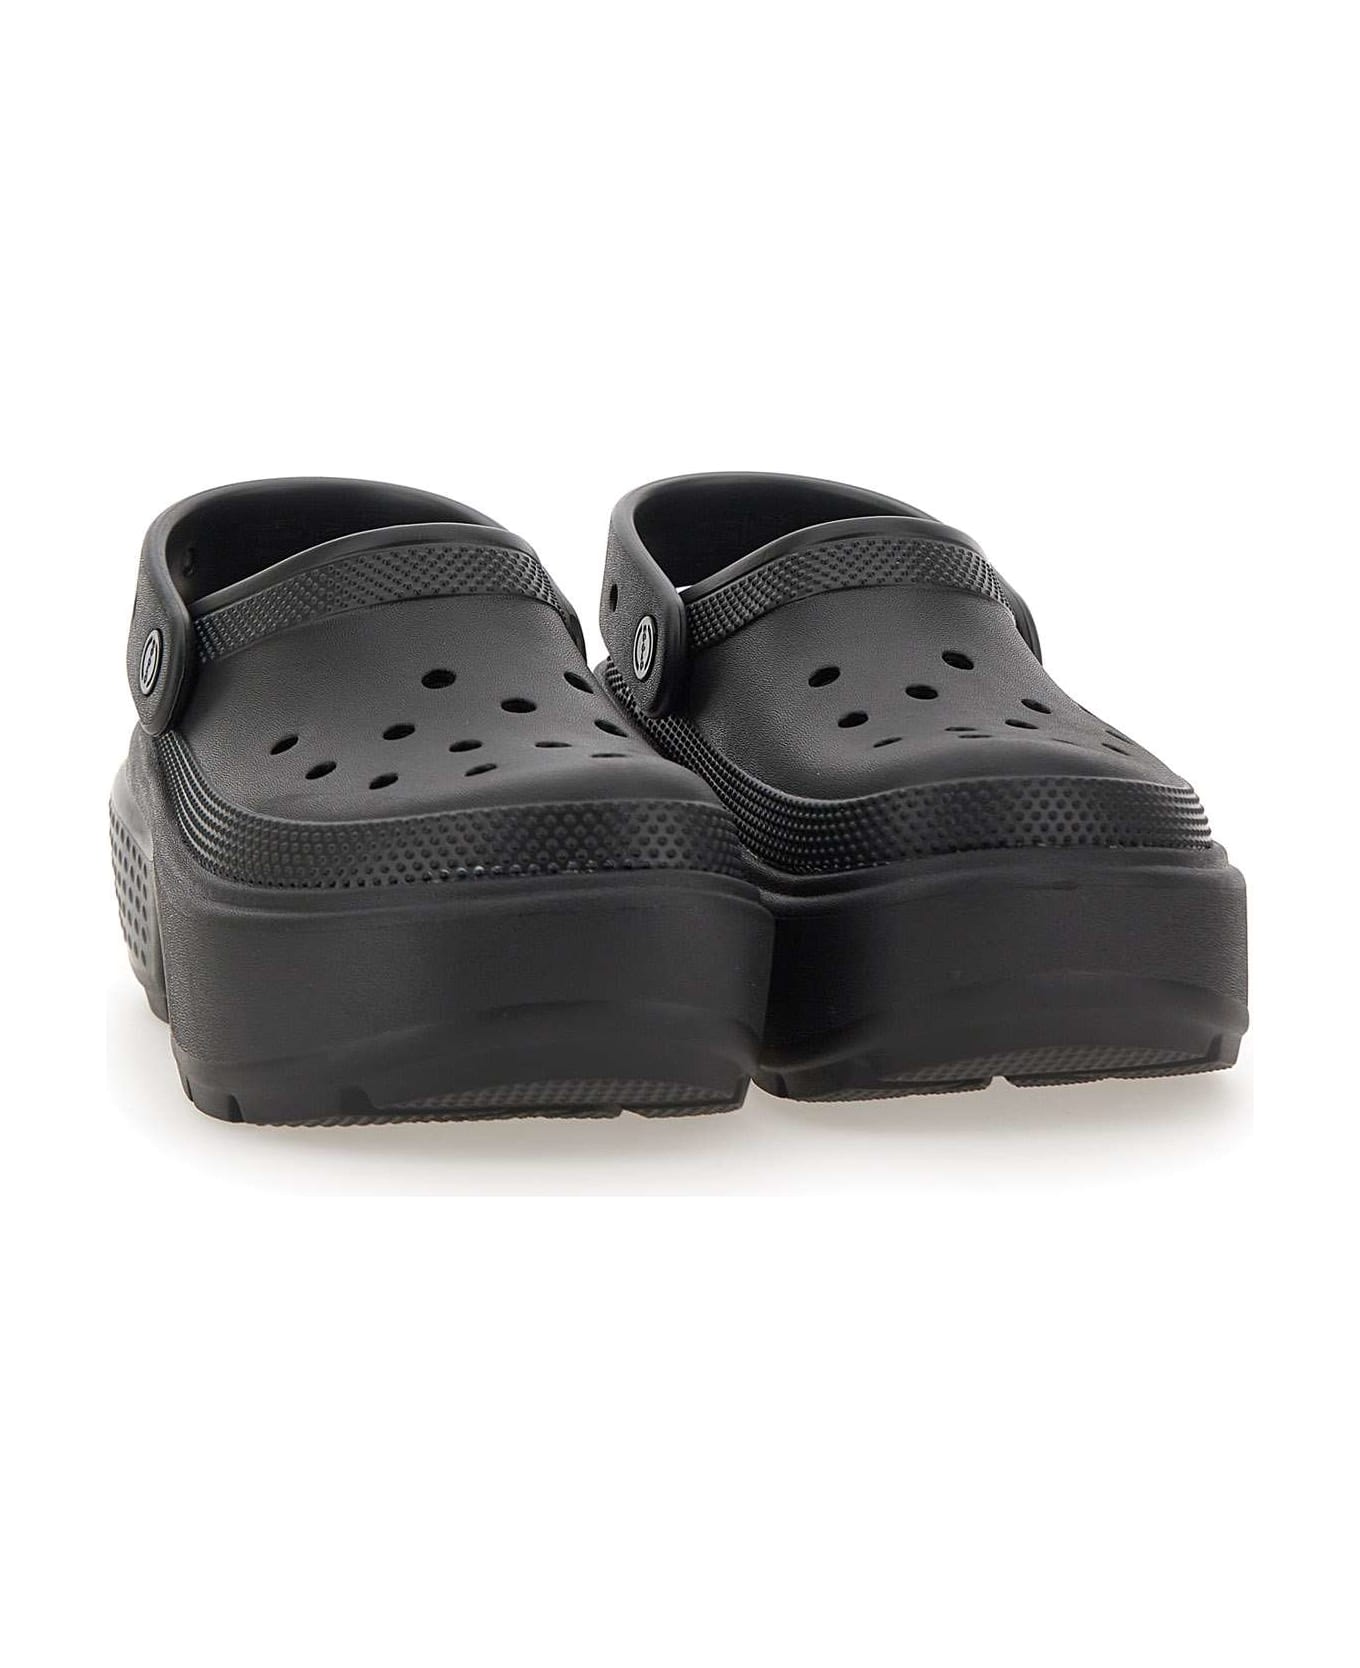 Crocs "stomp Clog" Mules - BLACK サンダル